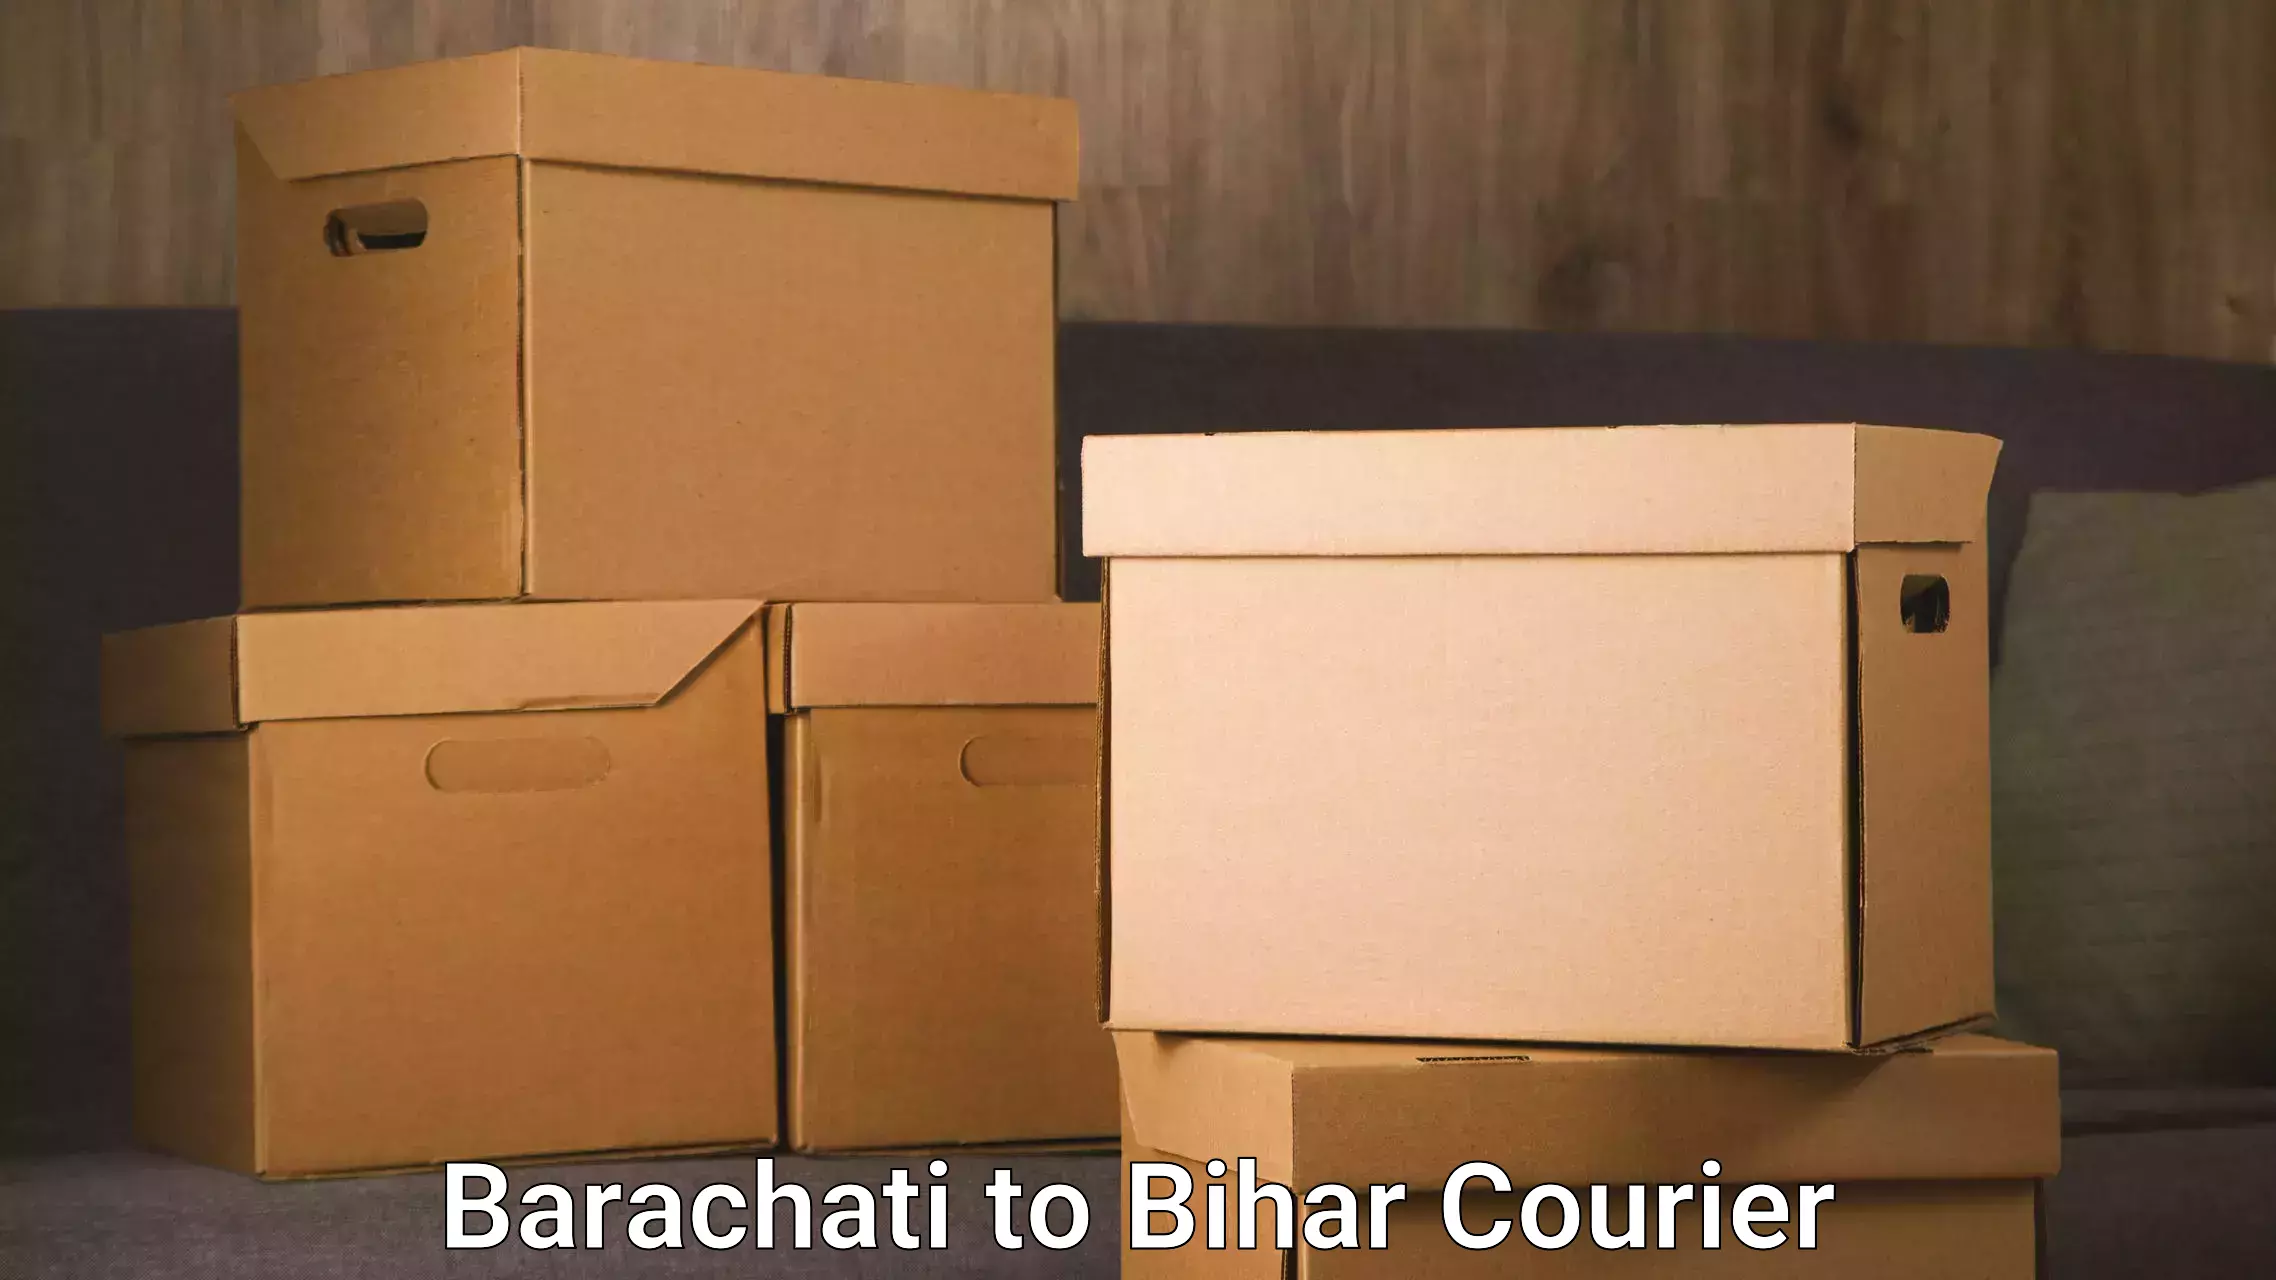 Moving and handling services Barachati to Saraiya